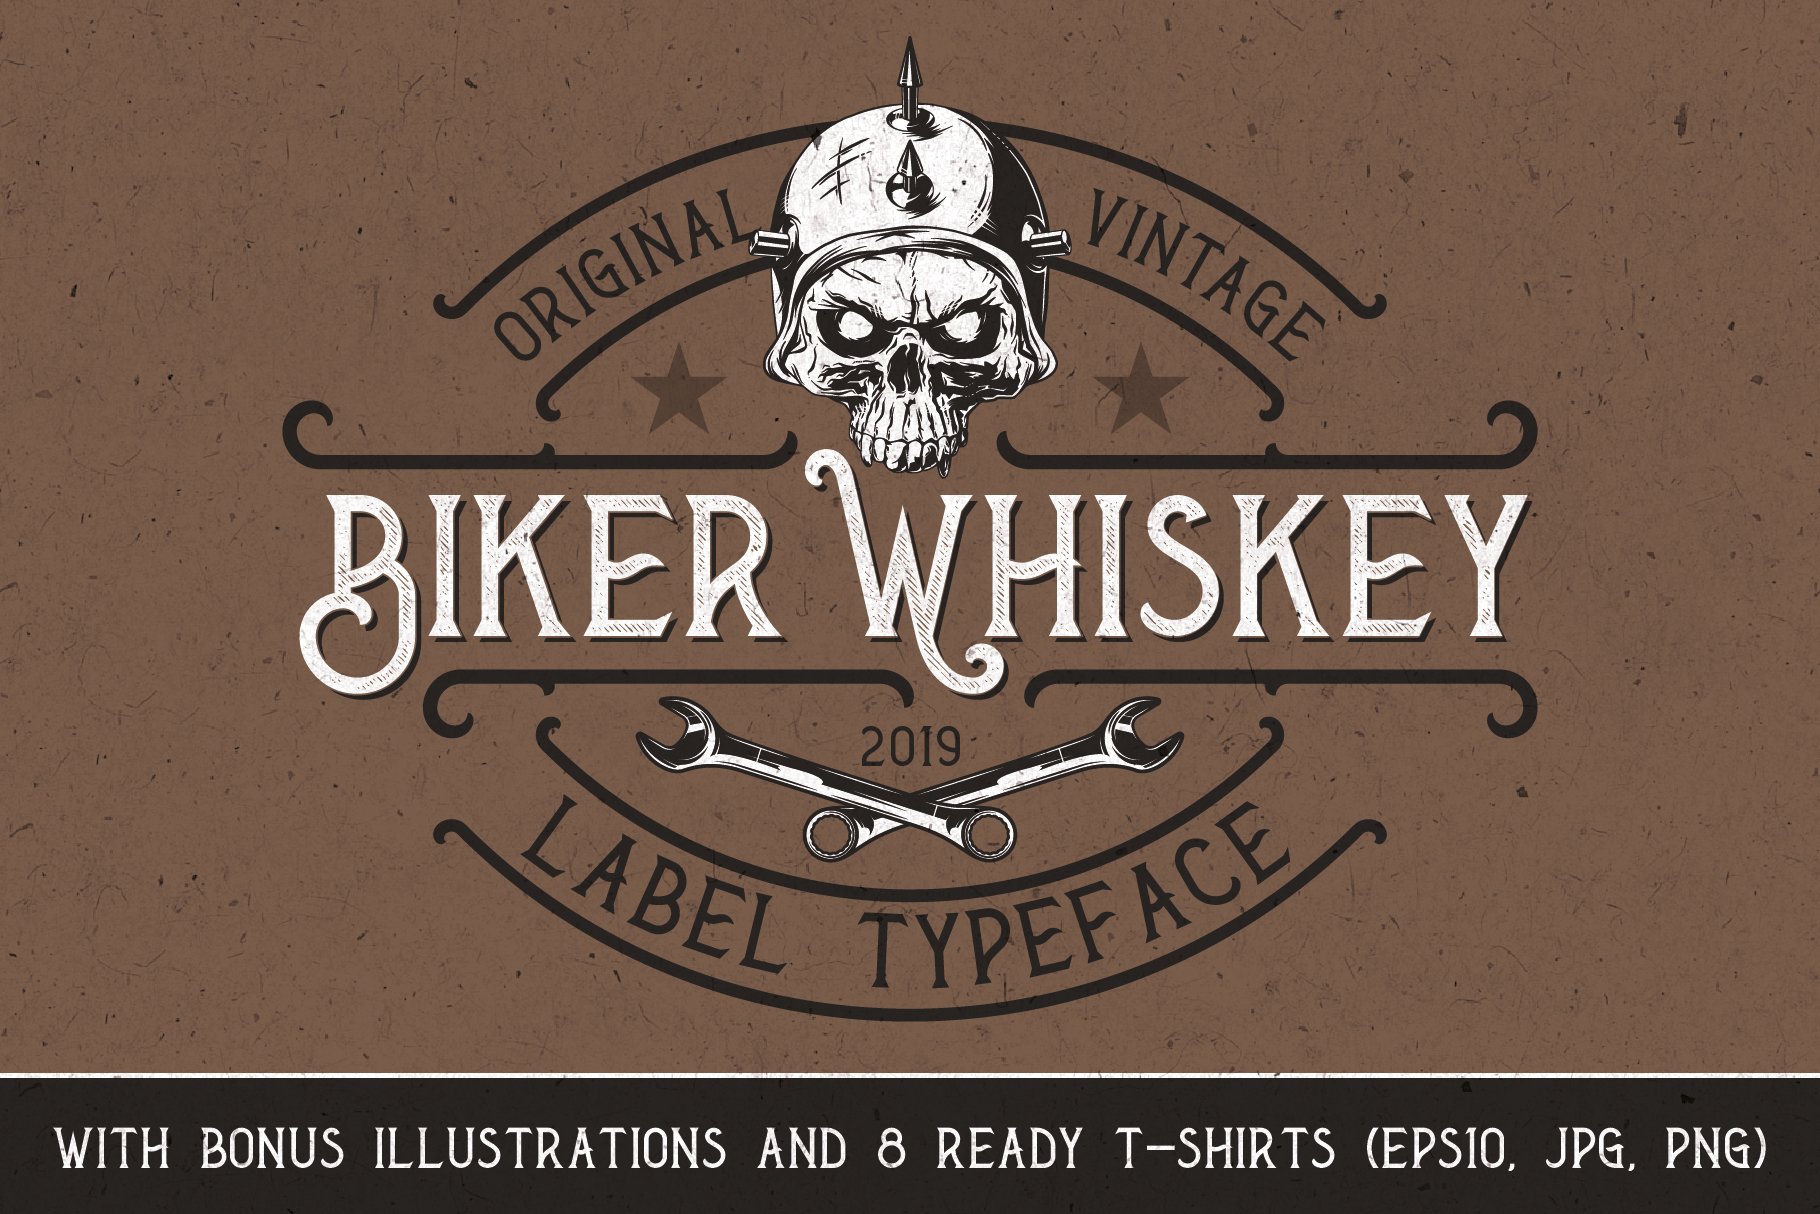 Biker Whiskey cover image.